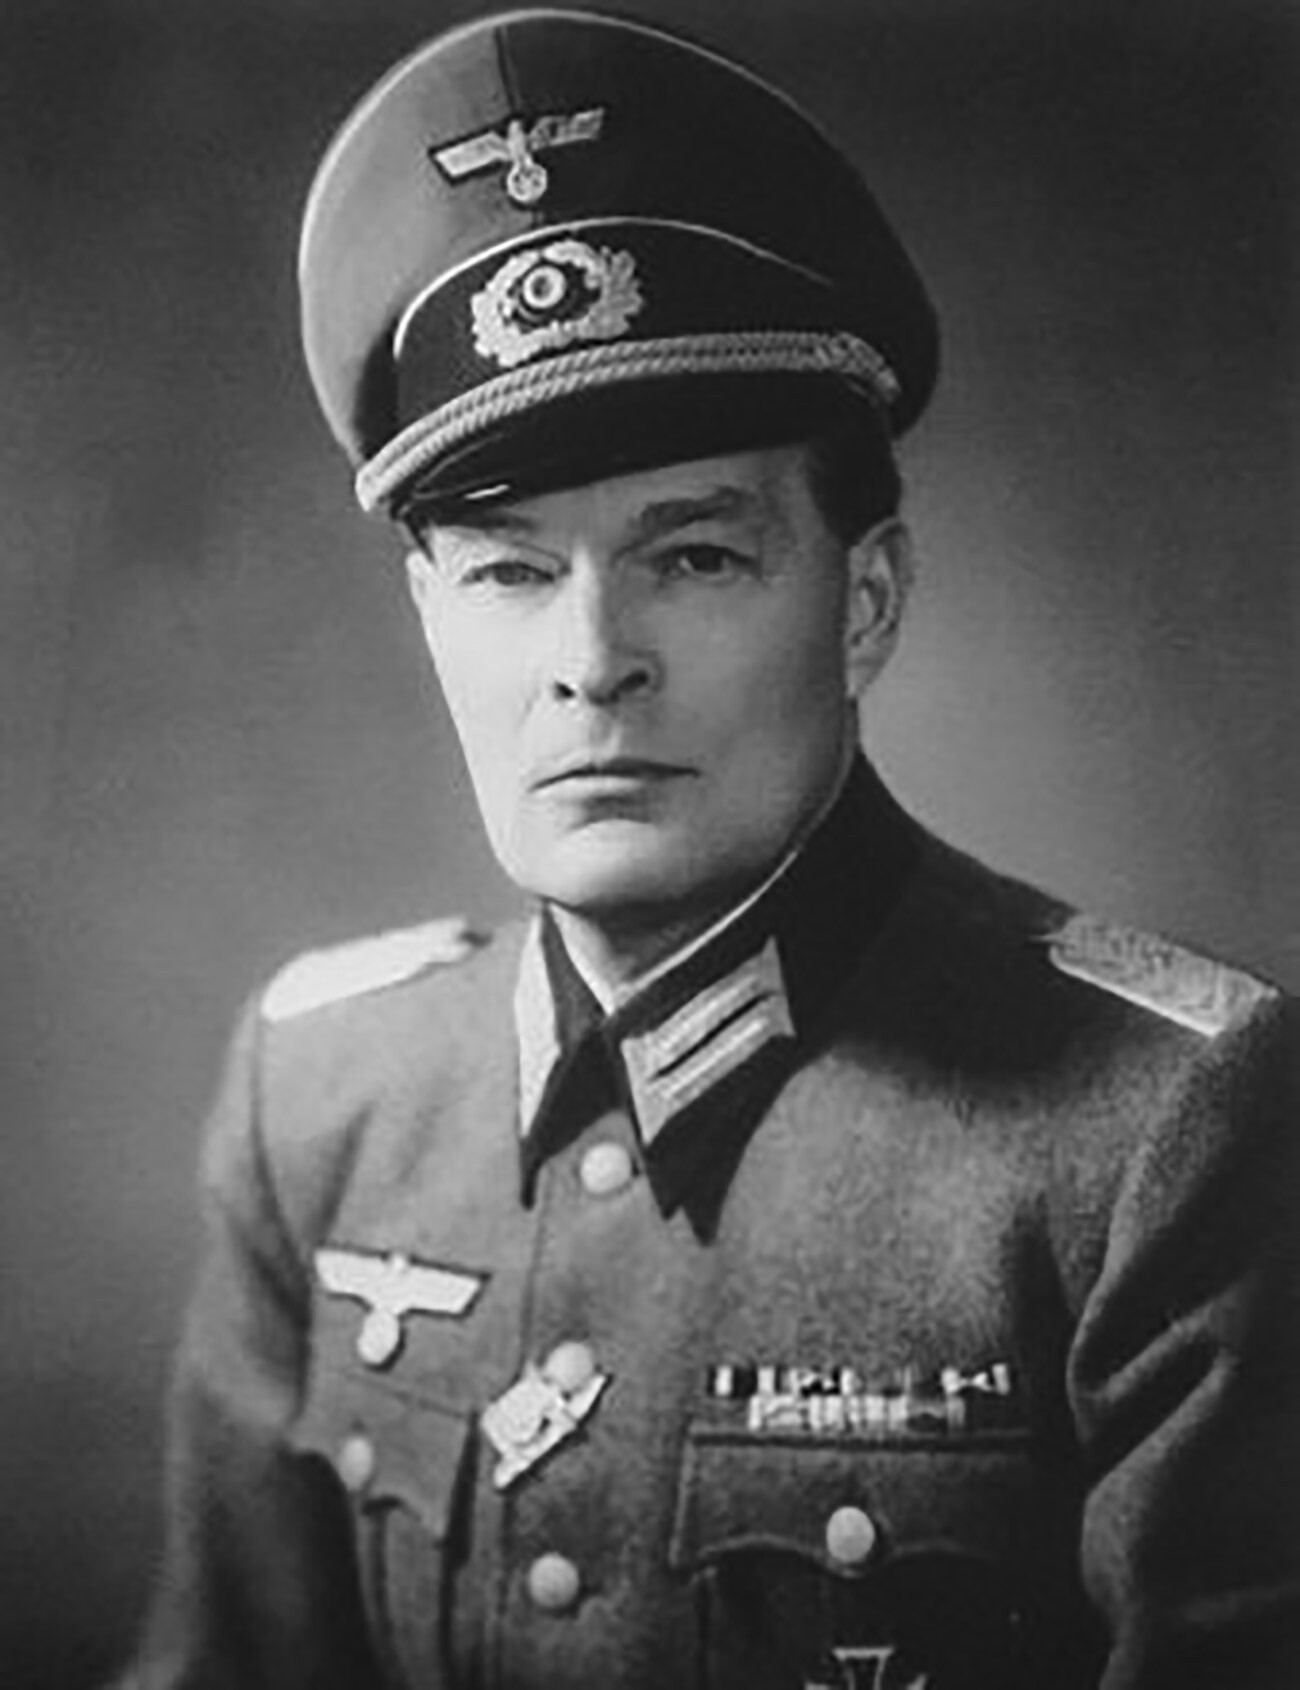 Georg-Michael Alexander von Merenberg con uniforme de comandante de la Wehrmacht. Alrededor de 1944.